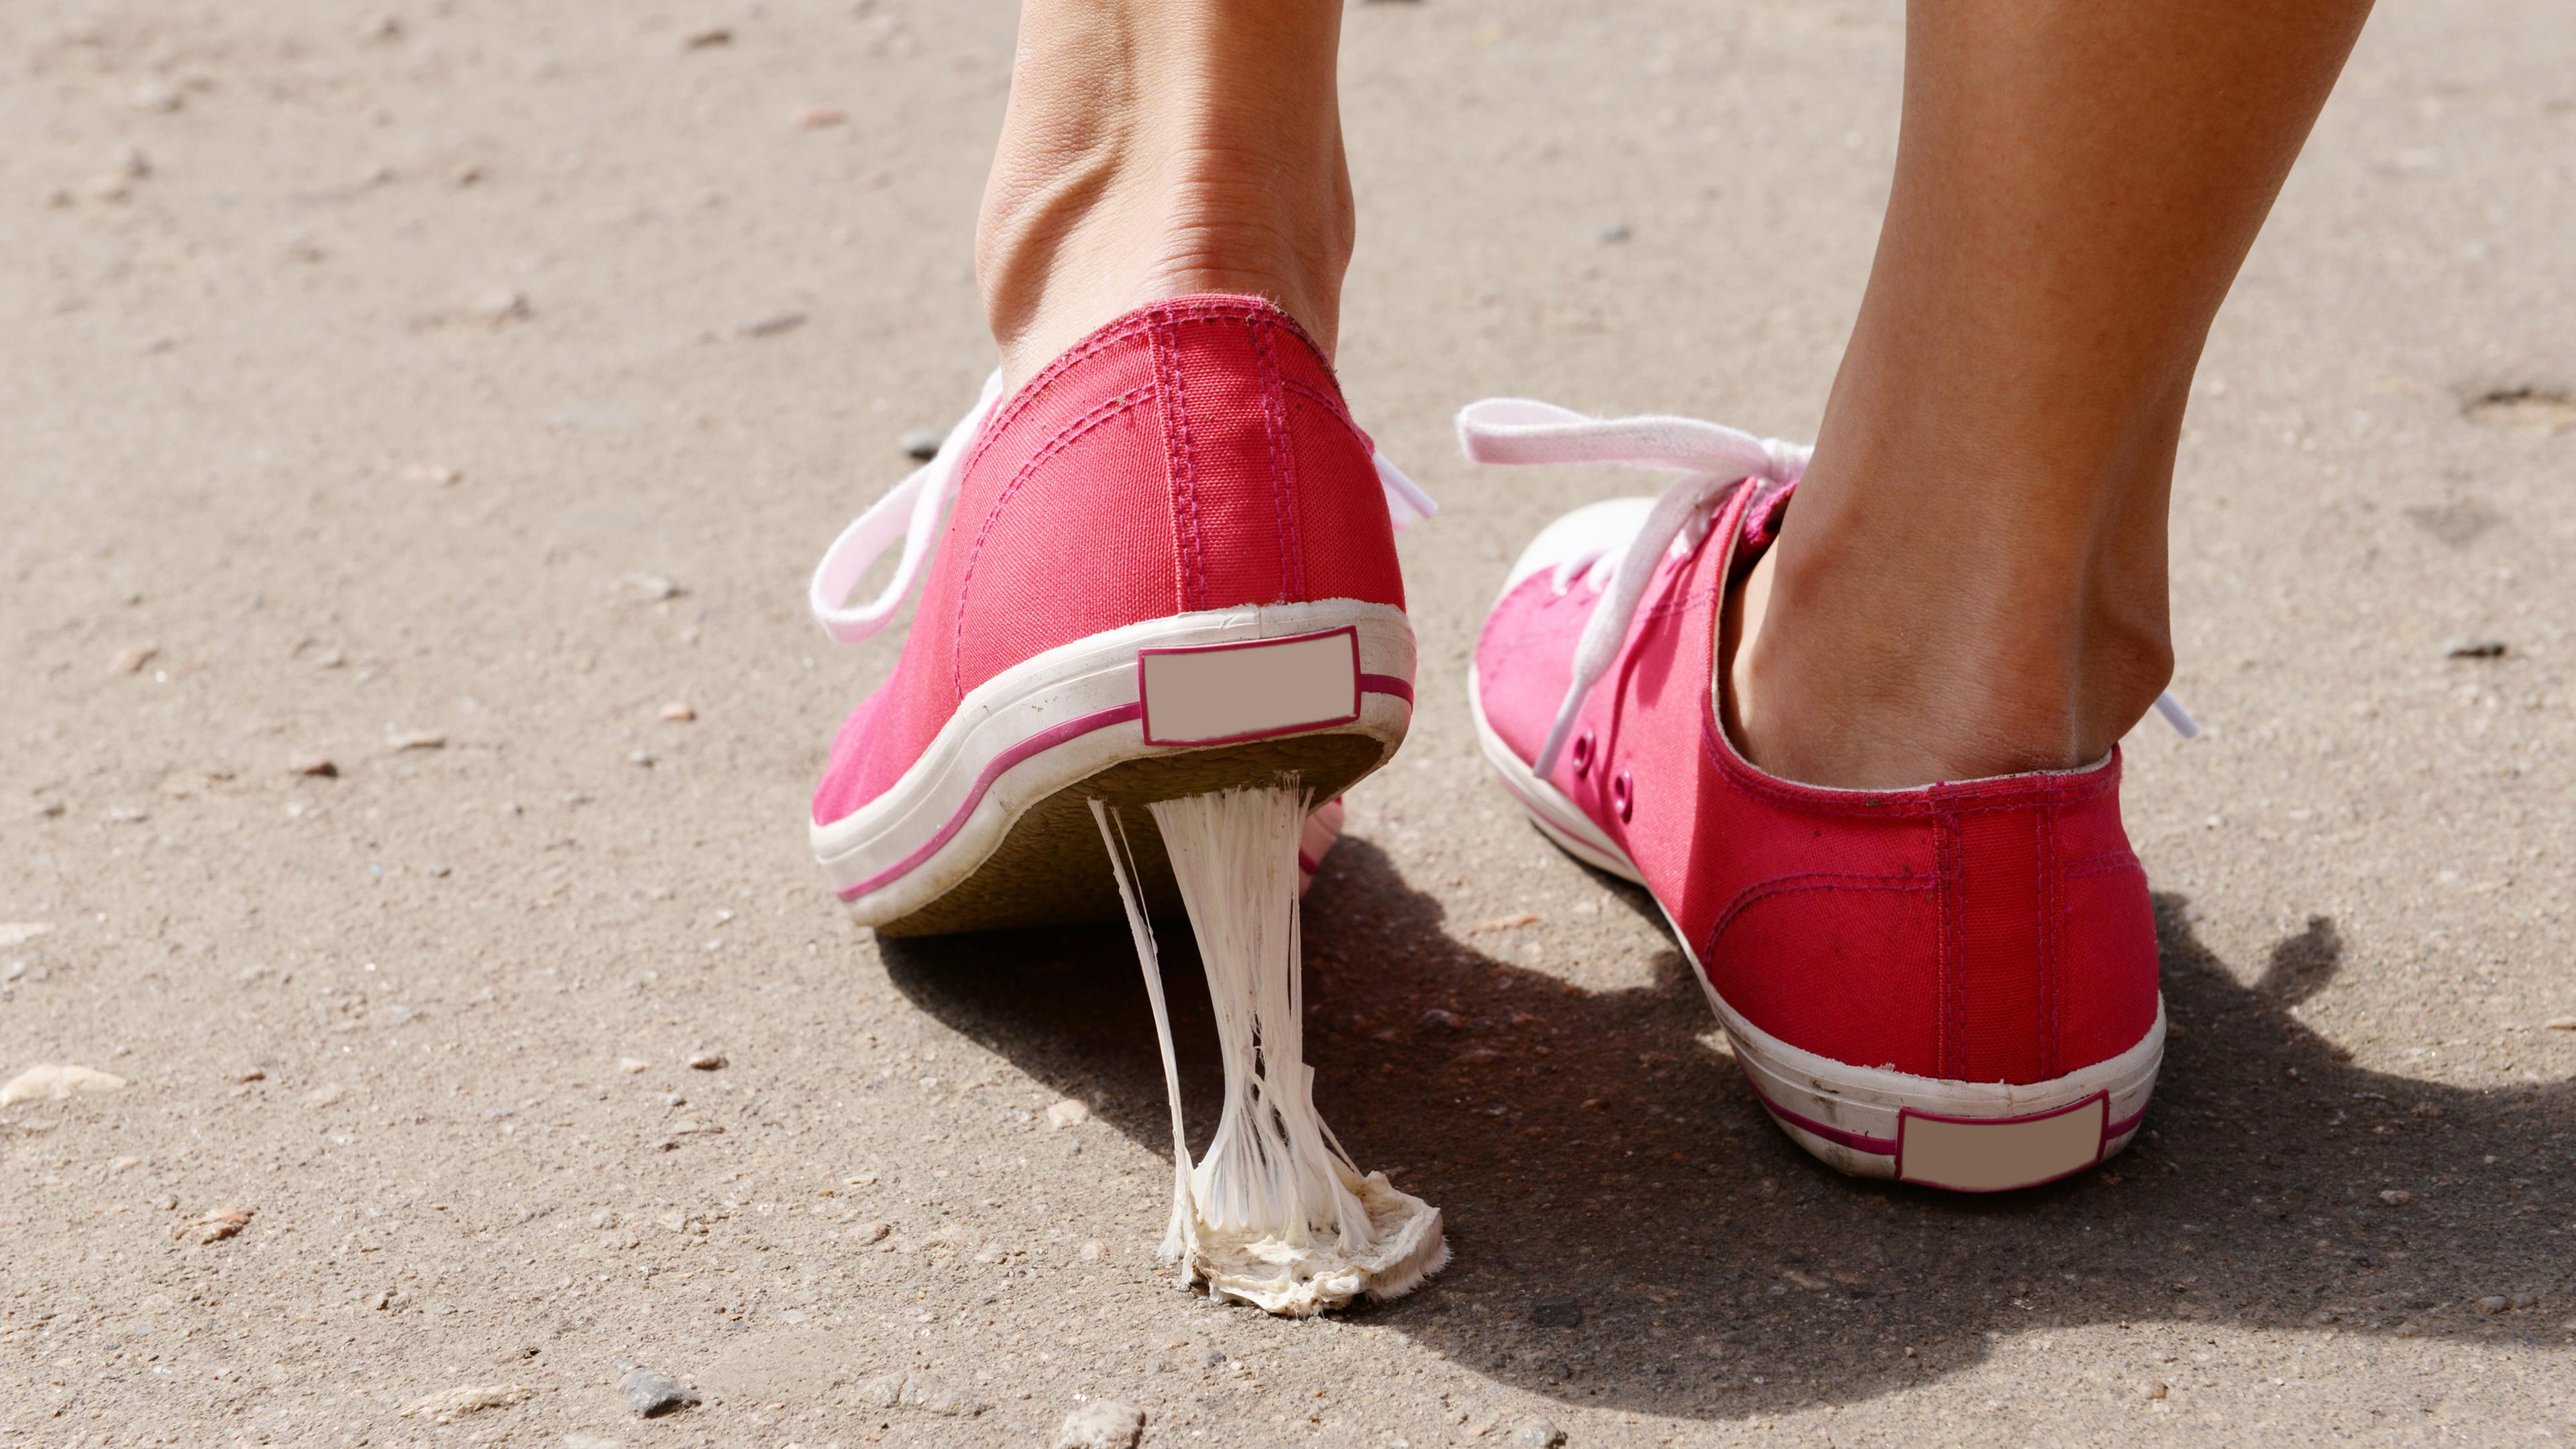 Ein Kaugummi klebt beim anheben des Fußes an der Sohle eines roten Sneaker.